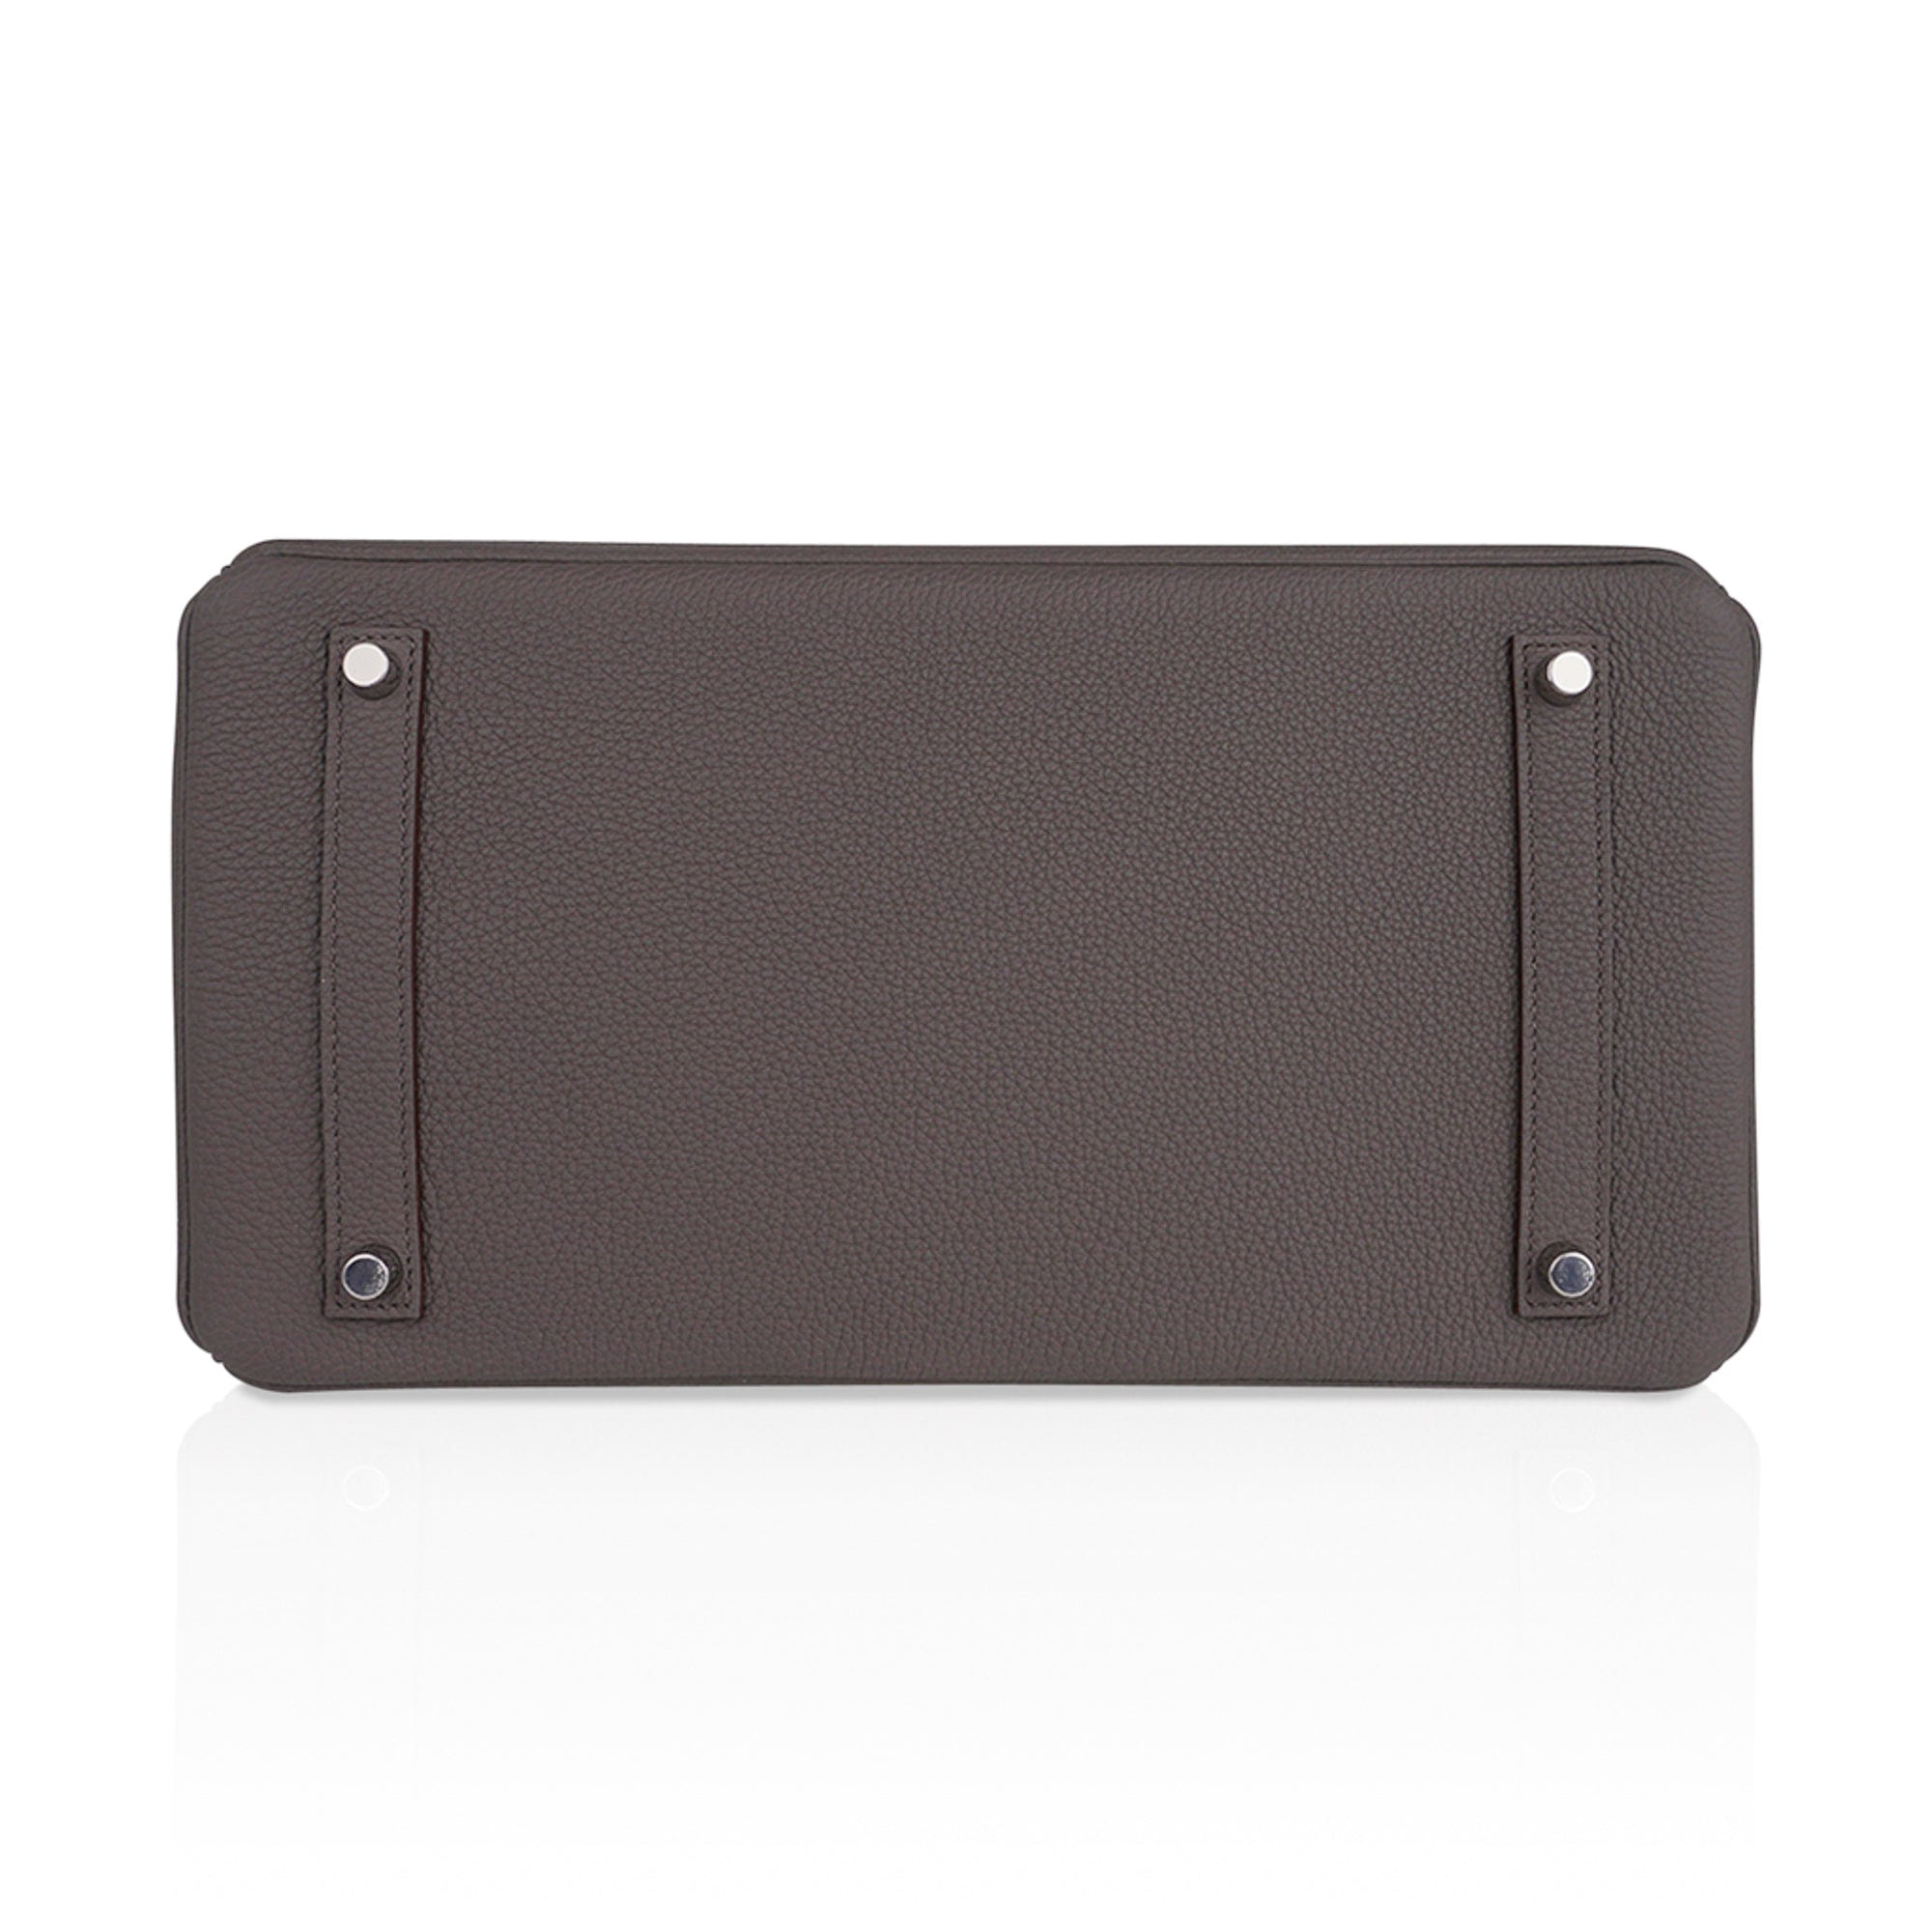 Hermès Etain Birkin 25cm of Togo Leather with Palladium Hardware, Handbags  & Accessories Online, Ecommerce Retail